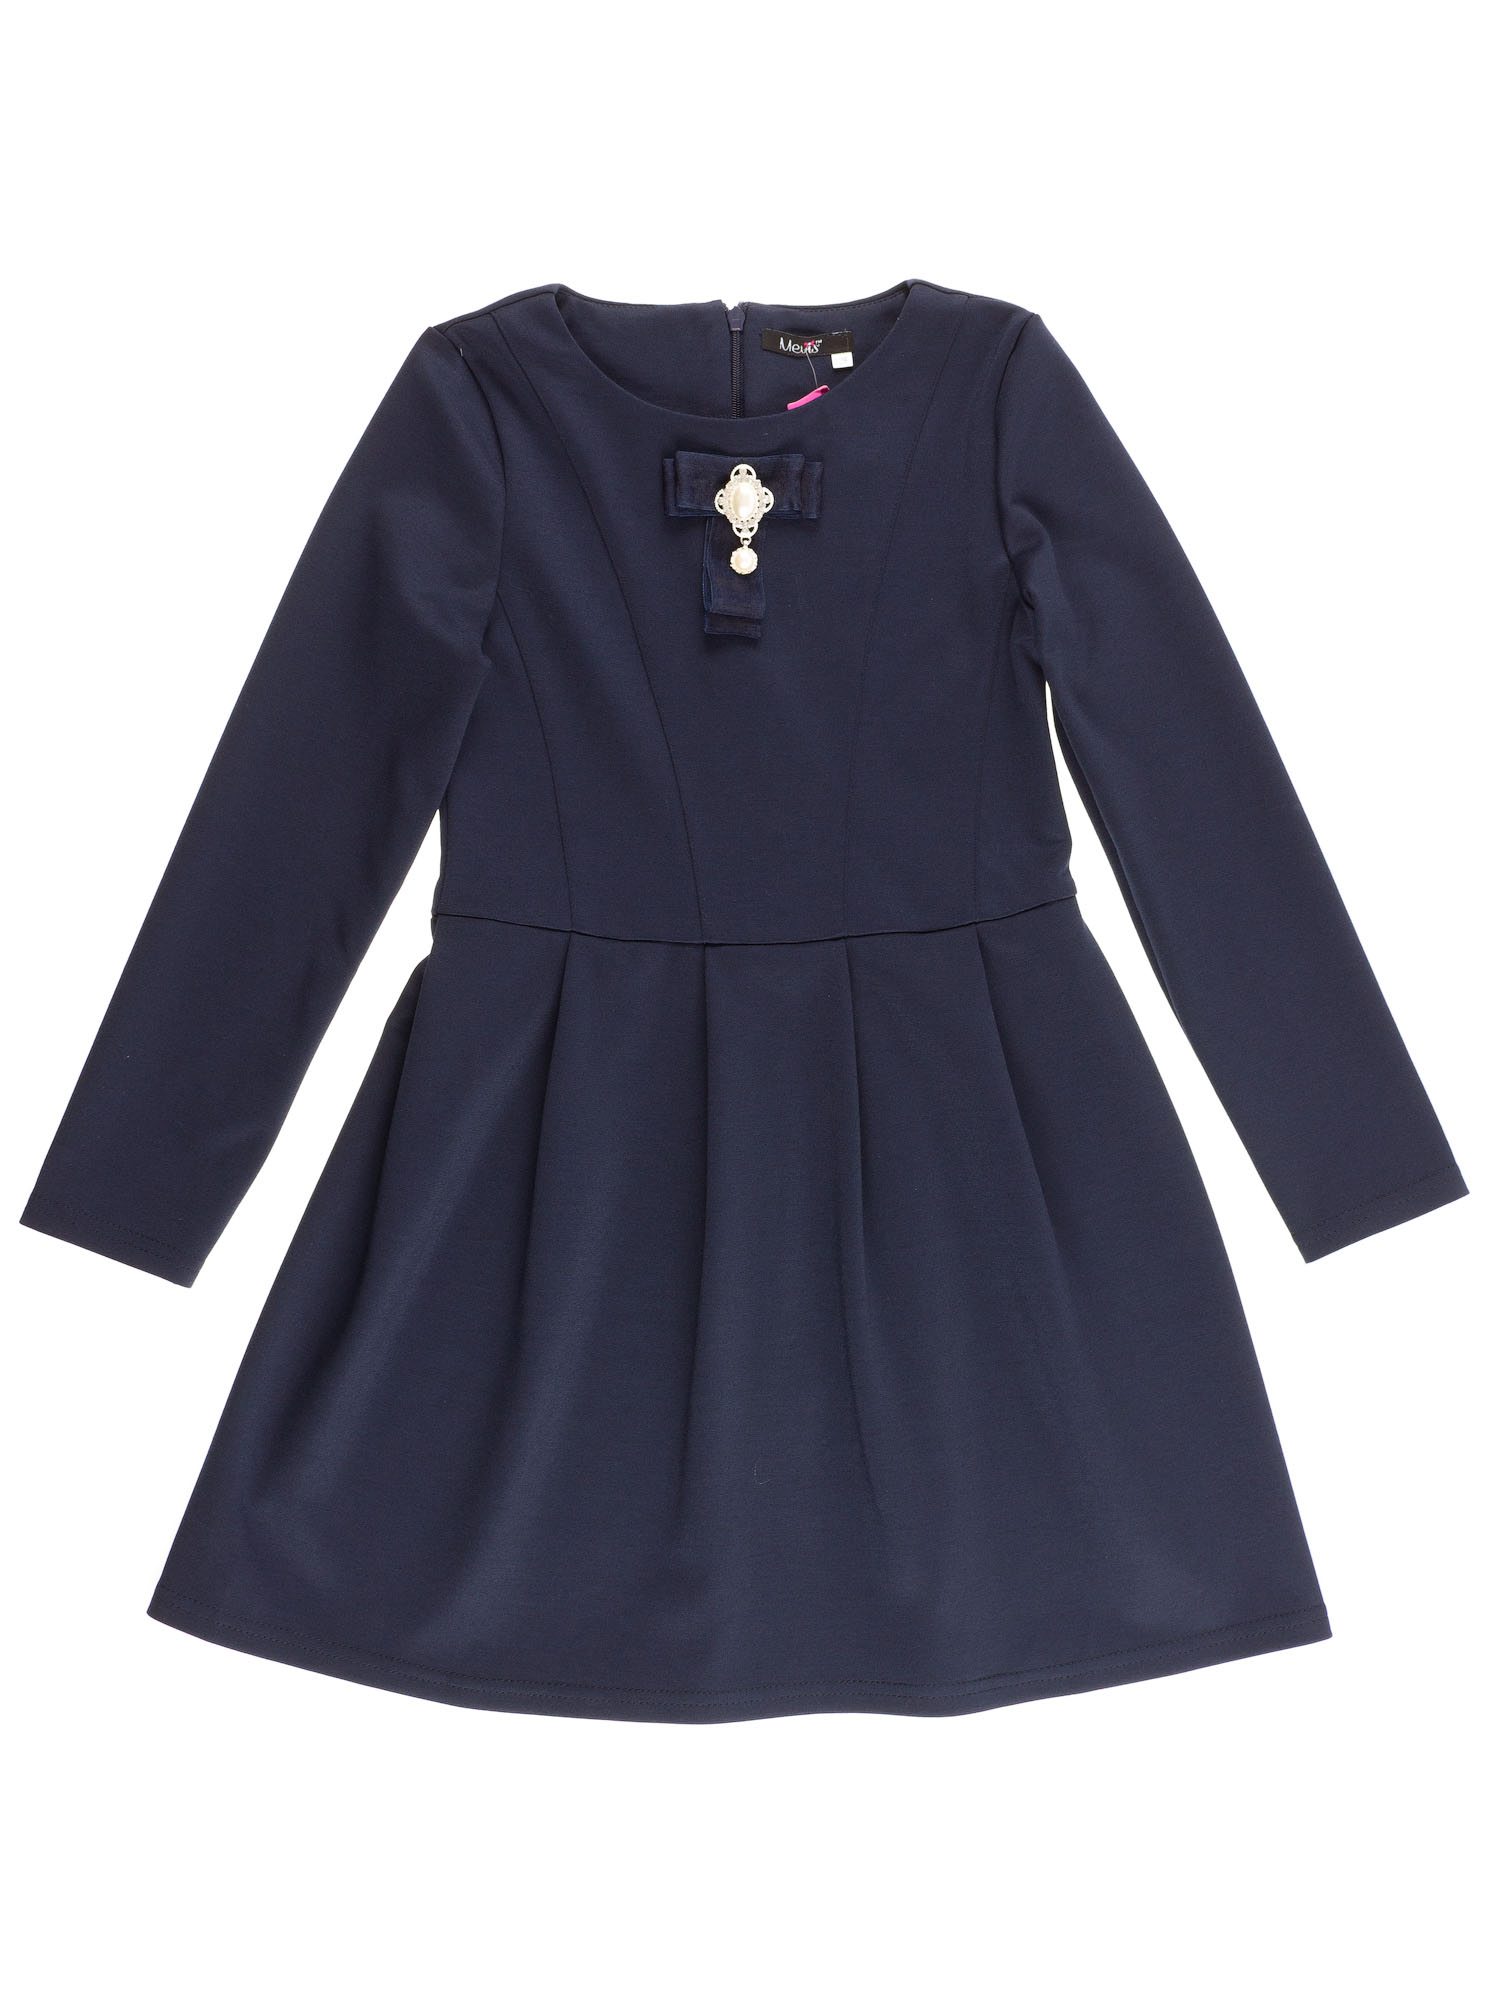 Платье школьное с длинным рукавом Mevis синее 2391-01 - ціна